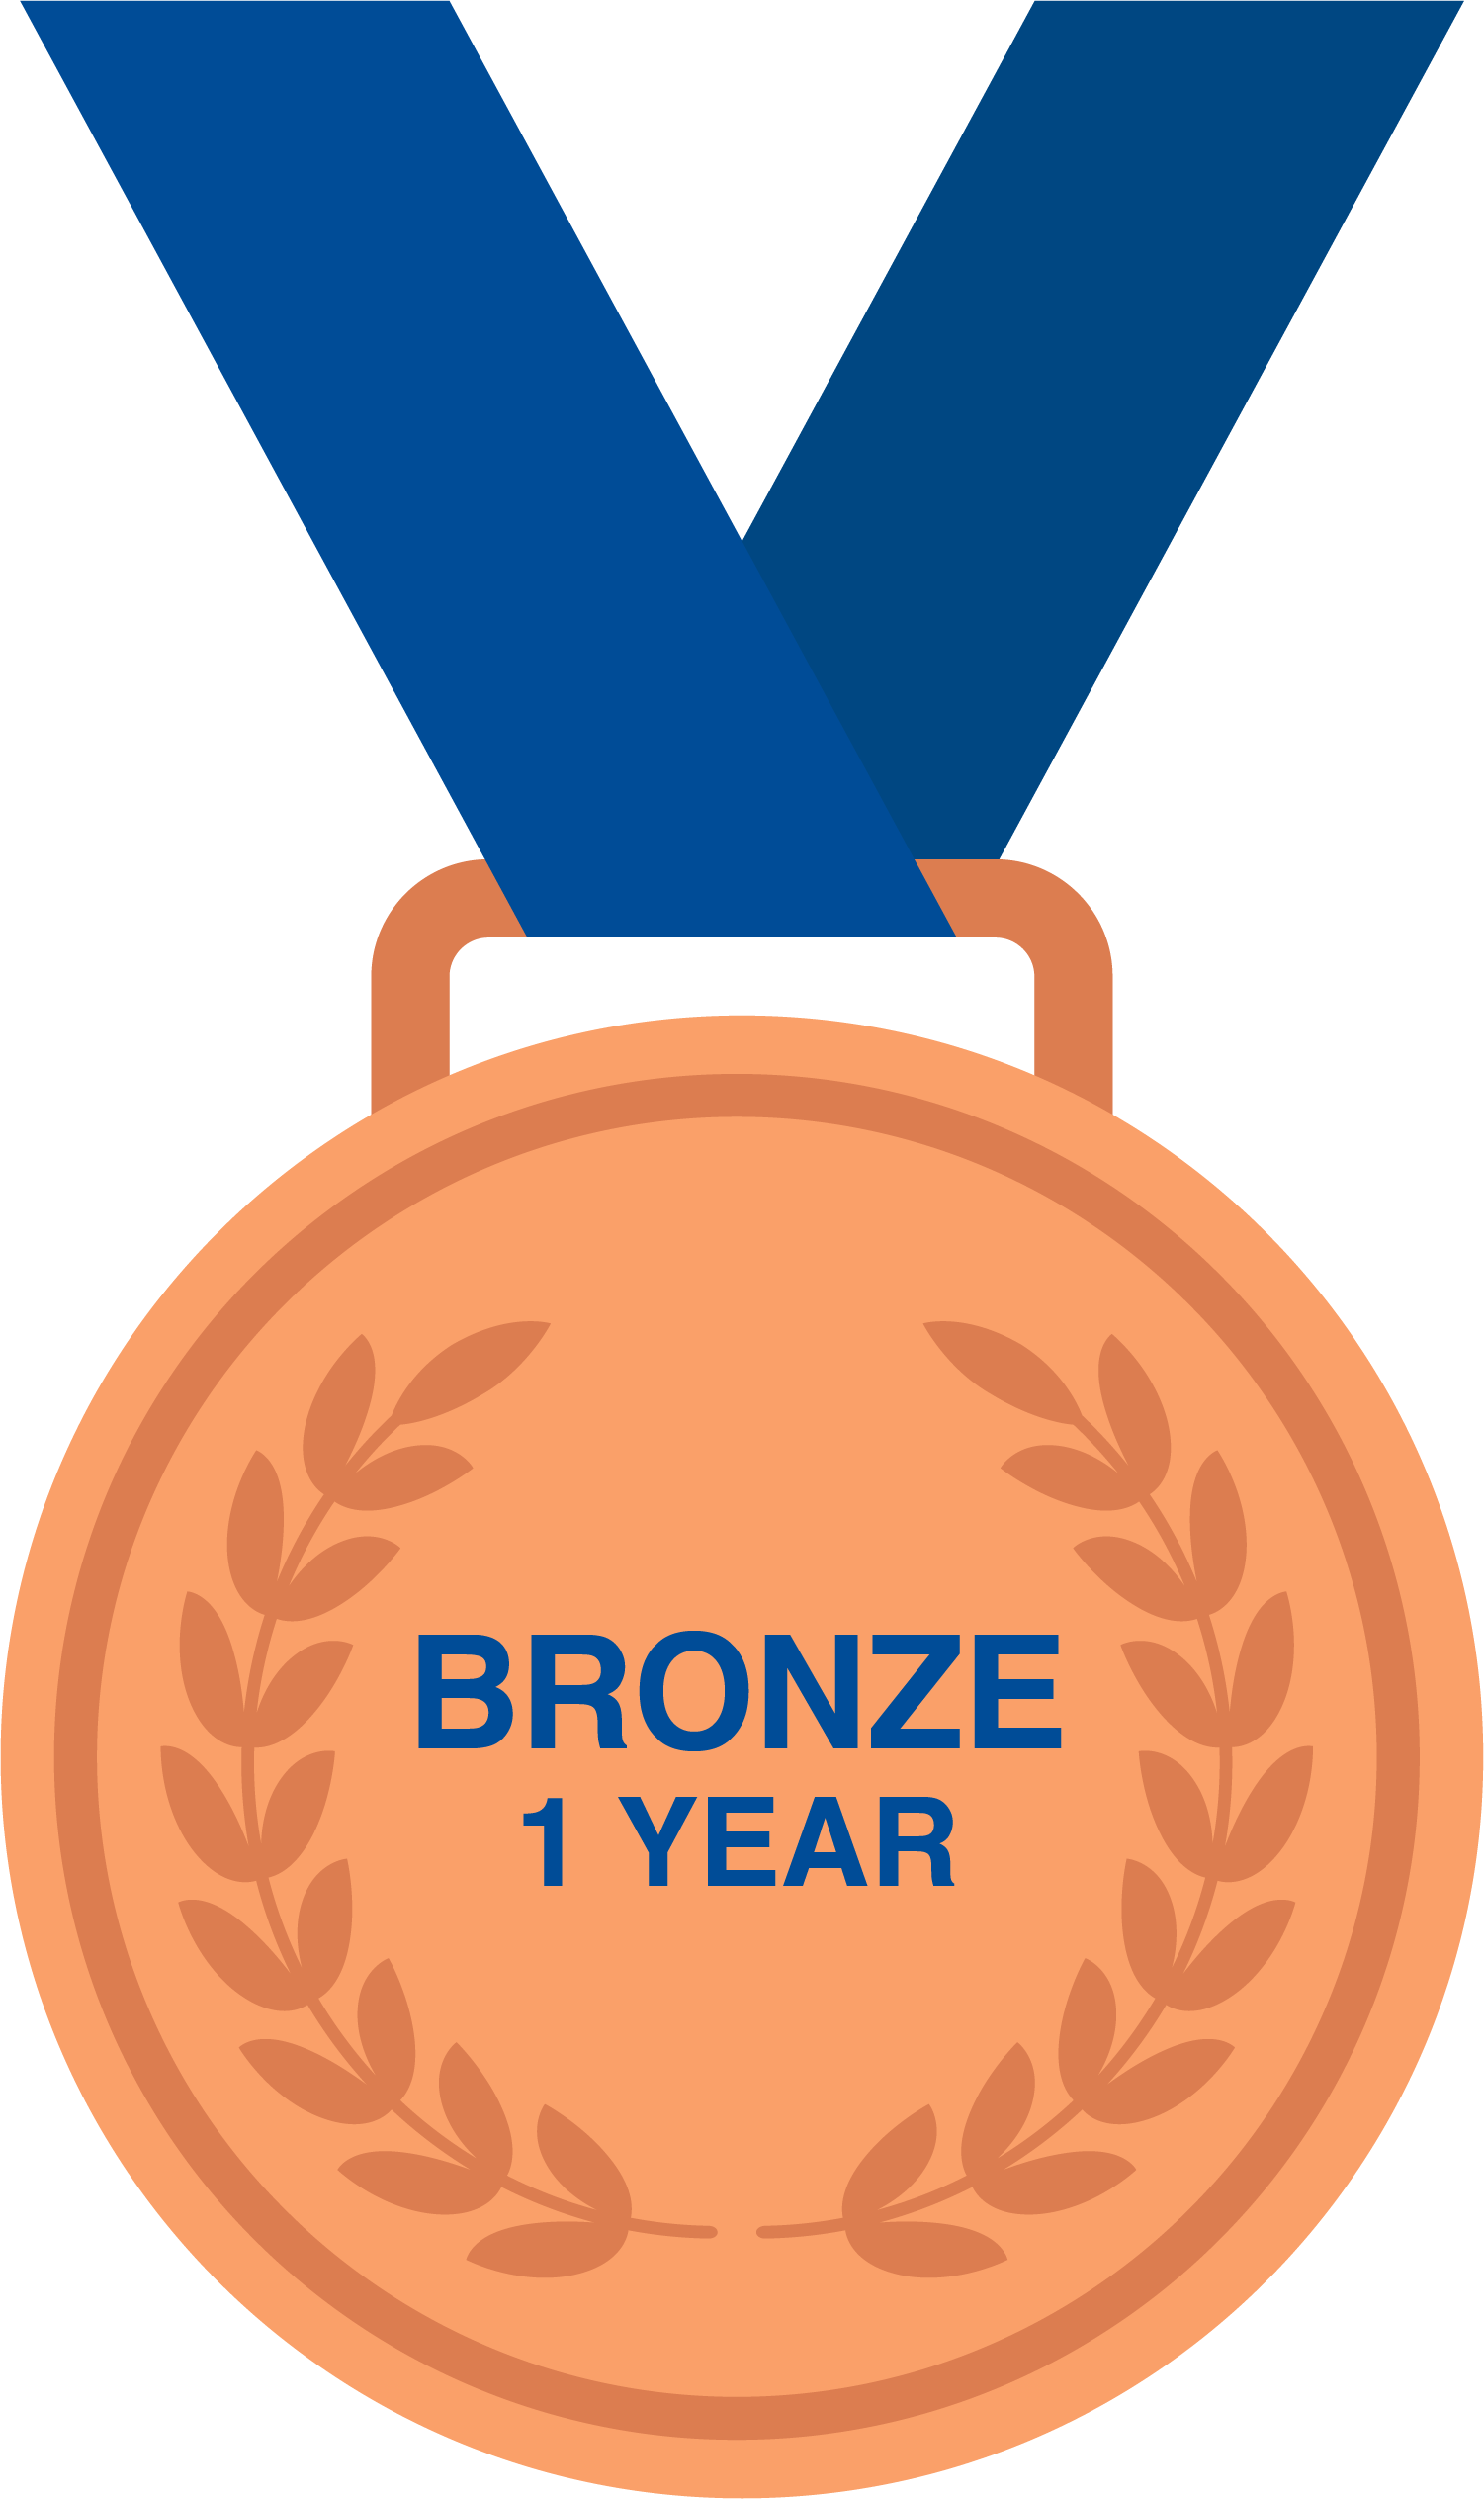 Bronze - 1 Year